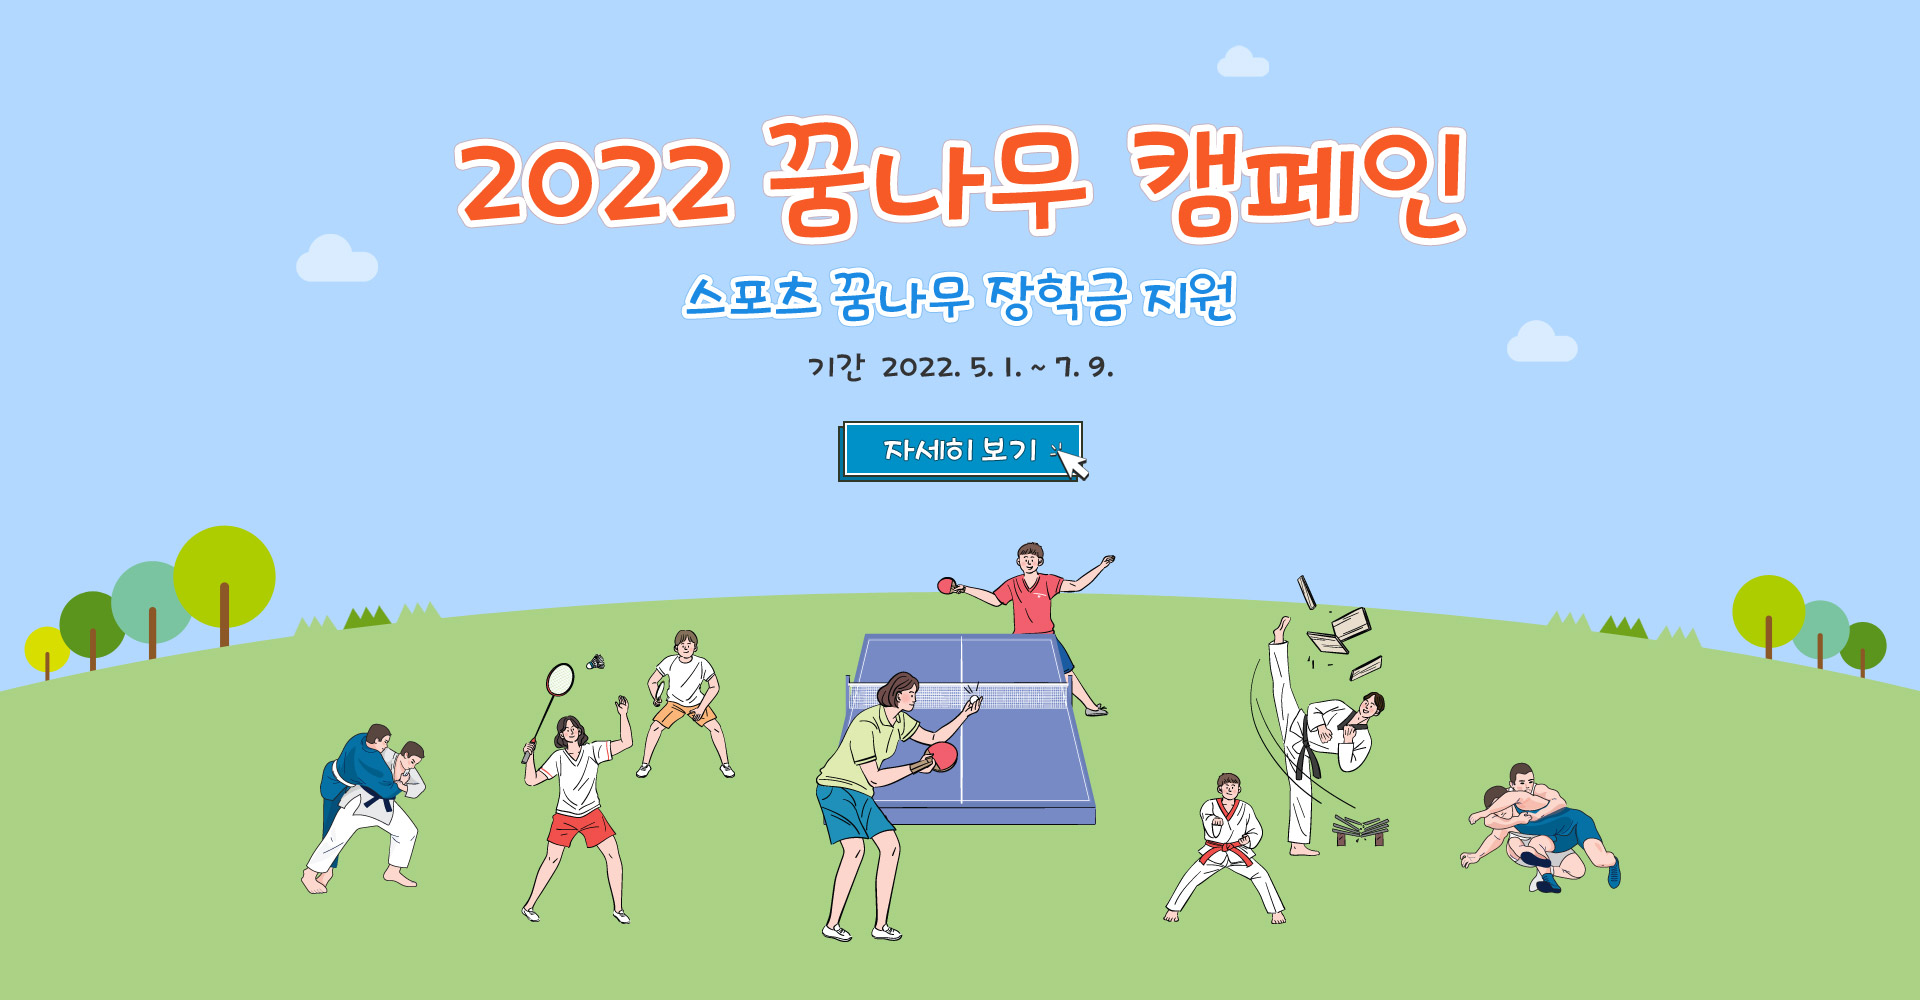 2022 꿈나무 캠페인 스포츠 꿈나무 장학금 지원 기간 2022.5.1. ~ 7.9.